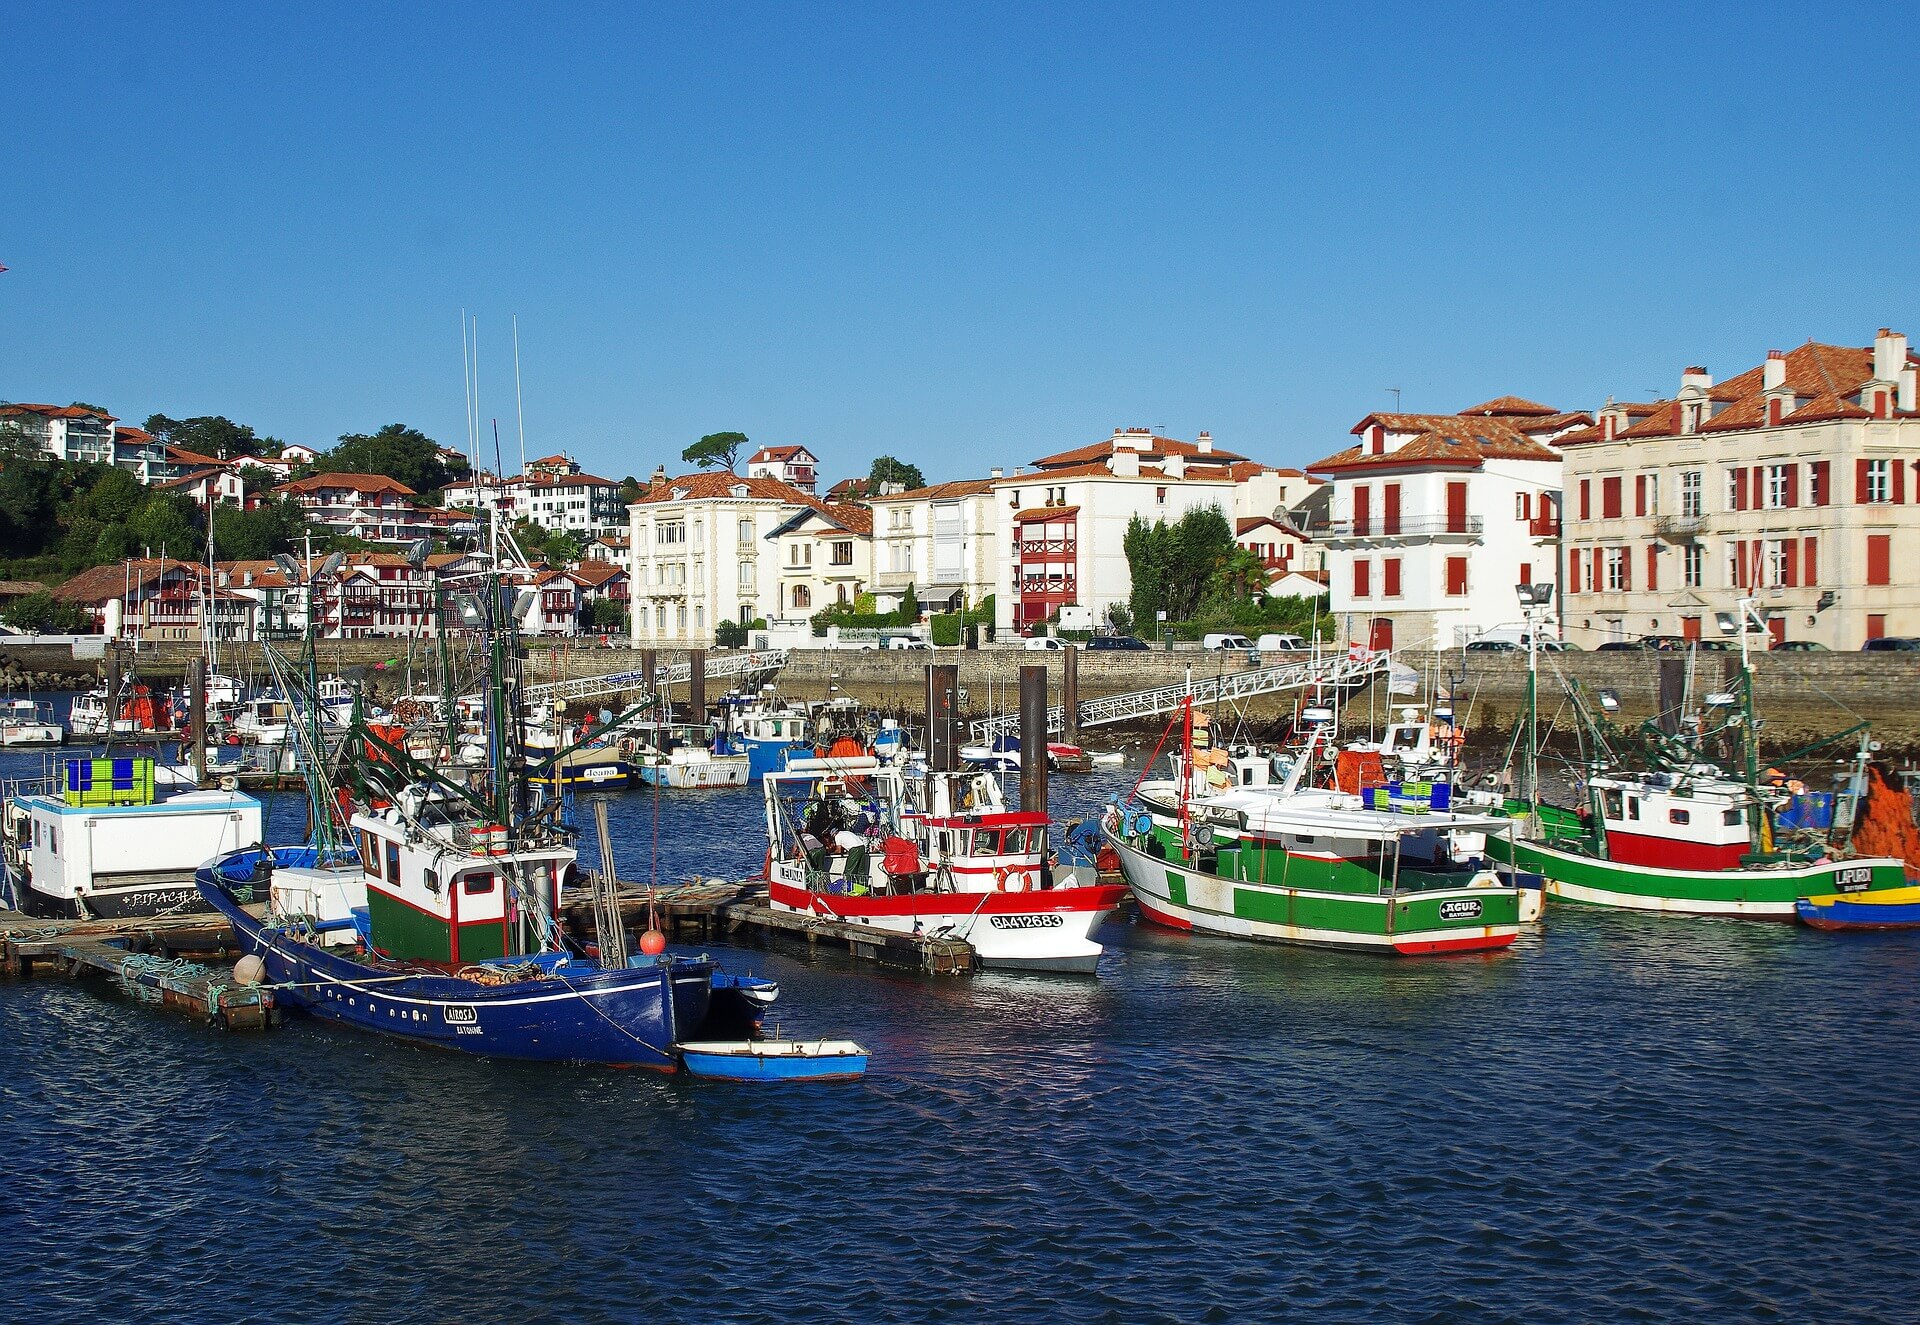 Réglementation Airbnb au Pays Basque : quelles sont les nouveautés ?